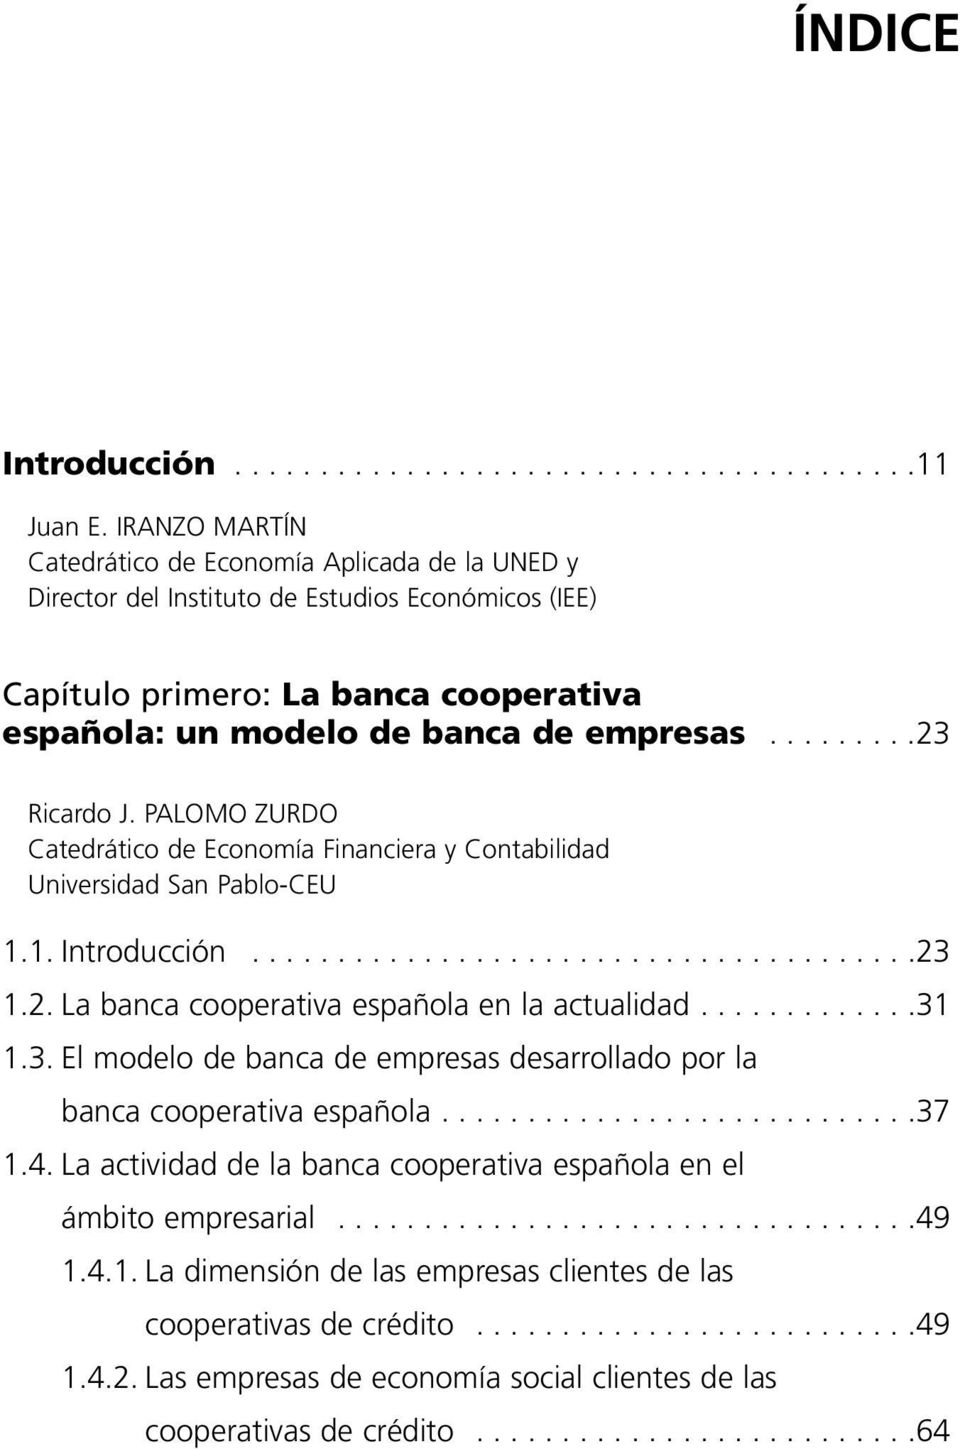 ........23 Ricardo J. PALOMO ZURDO Catedrático de Economía Financiera y Contabilidad Universidad San Pablo-CEU 1.1. Introducción.......................................23 1.2. La banca cooperativa española en la actualidad.